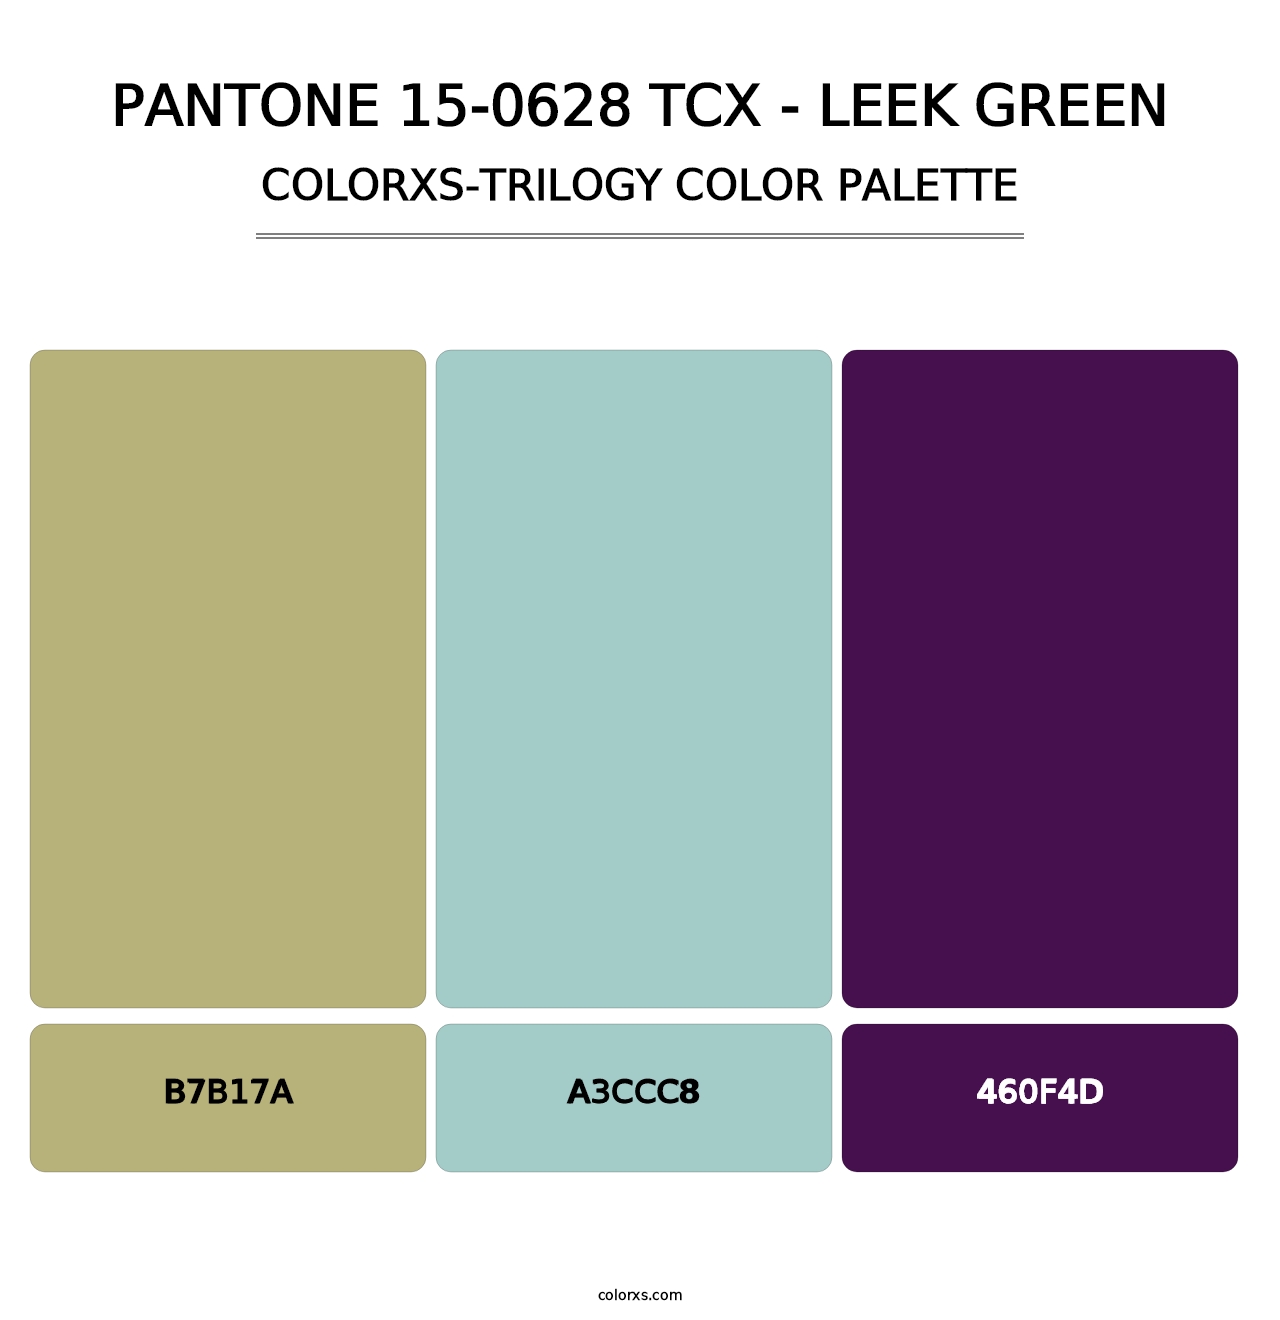 PANTONE 15-0628 TCX - Leek Green - Colorxs Trilogy Palette